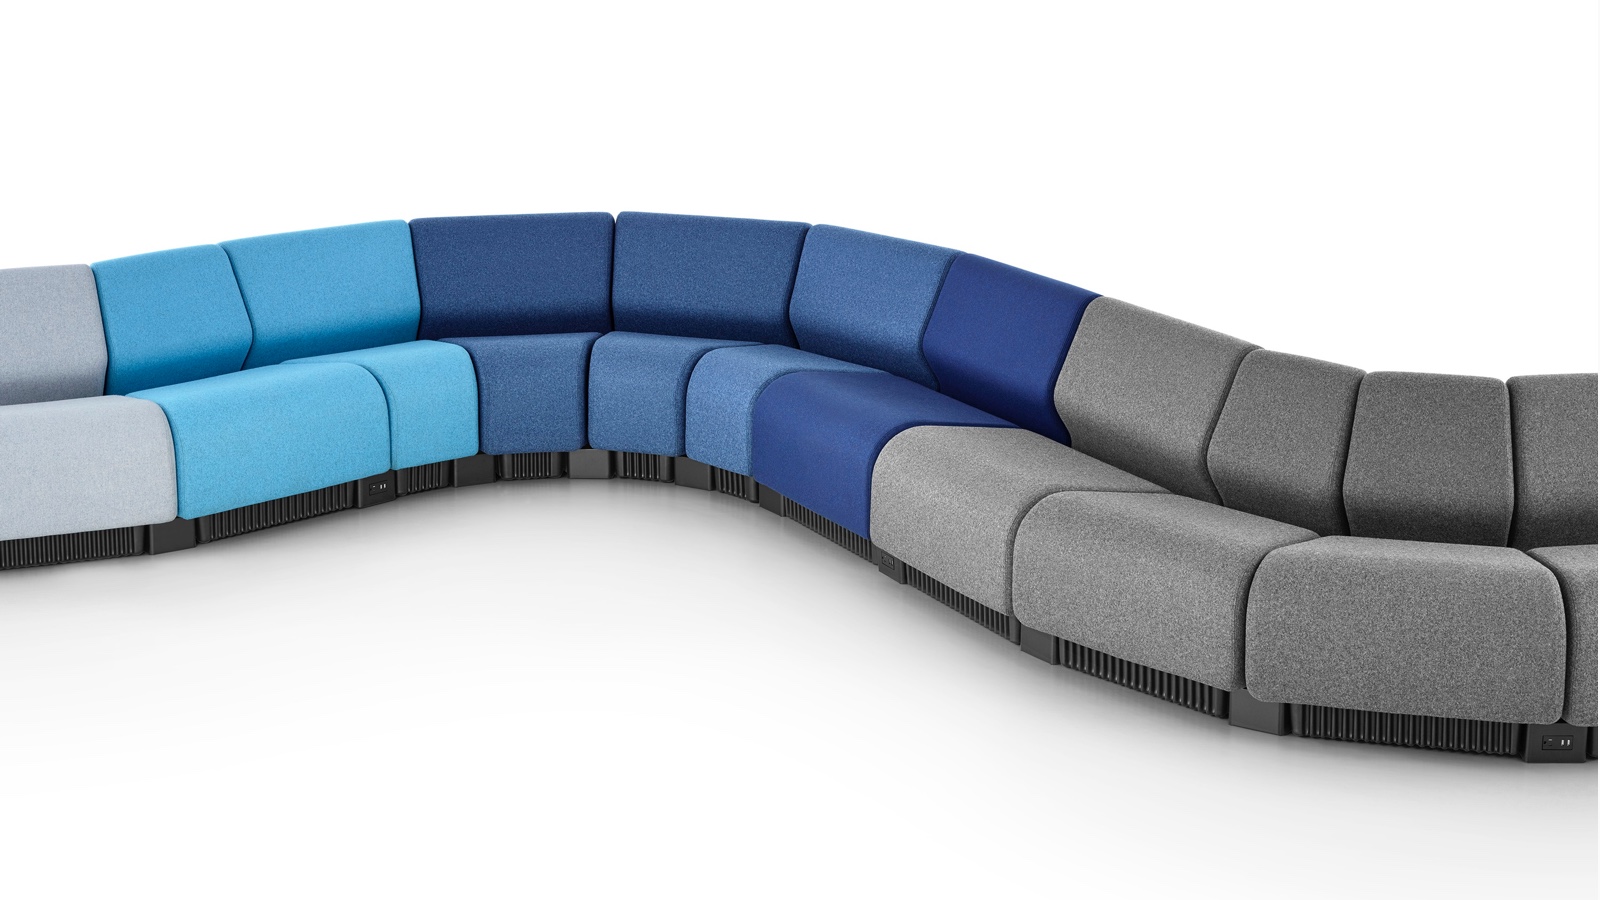 Configuración de sillas serpenteante con módulos de sillas Chadwick en tonos de gris y azul.